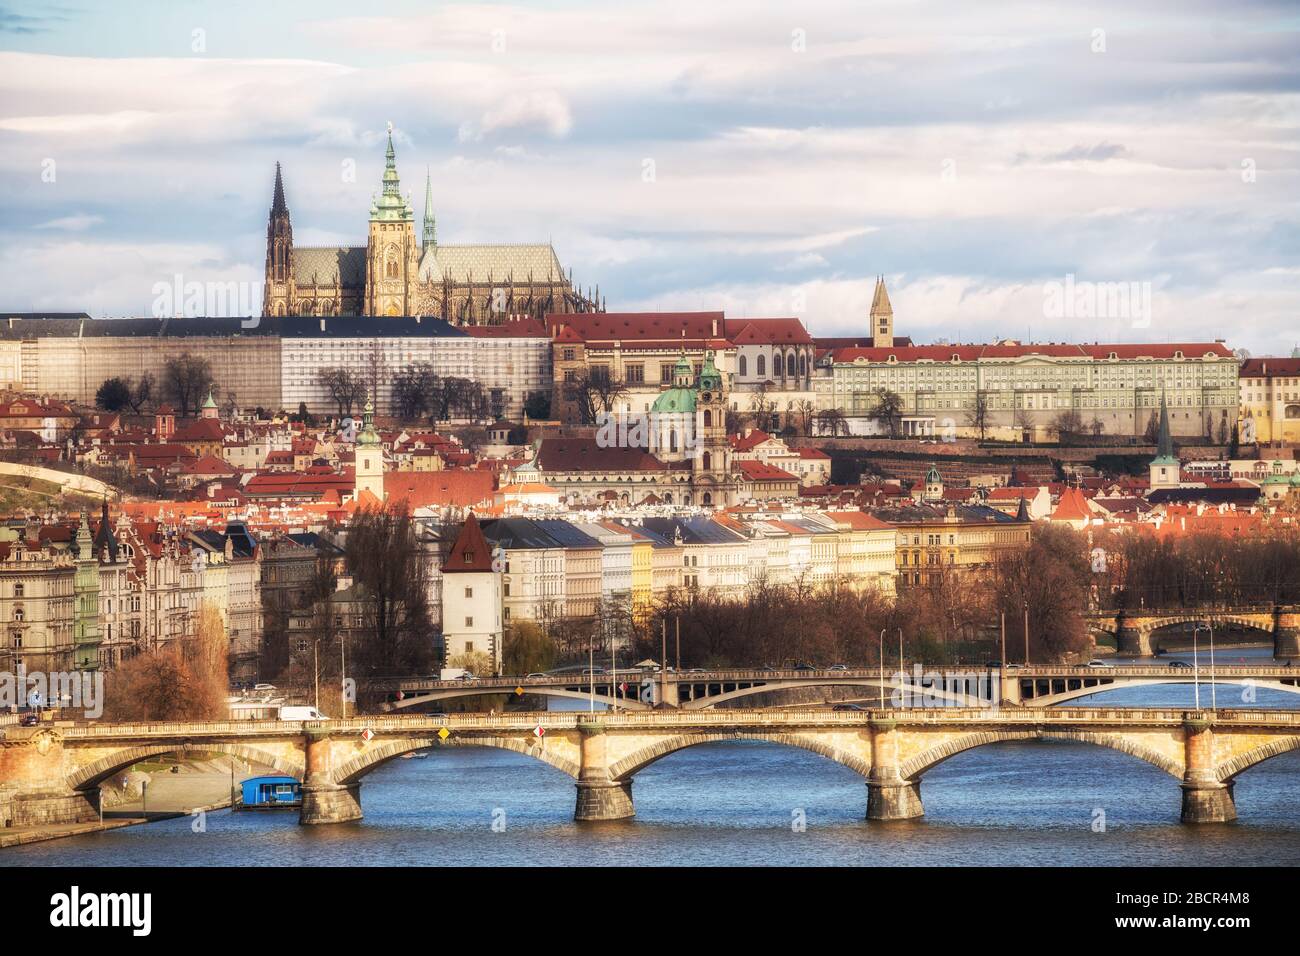 Vue sur le château de Prague, la cathédrale Saint-Vitus et les ponts sur la Vltava, Prague, République tchèque Banque D'Images